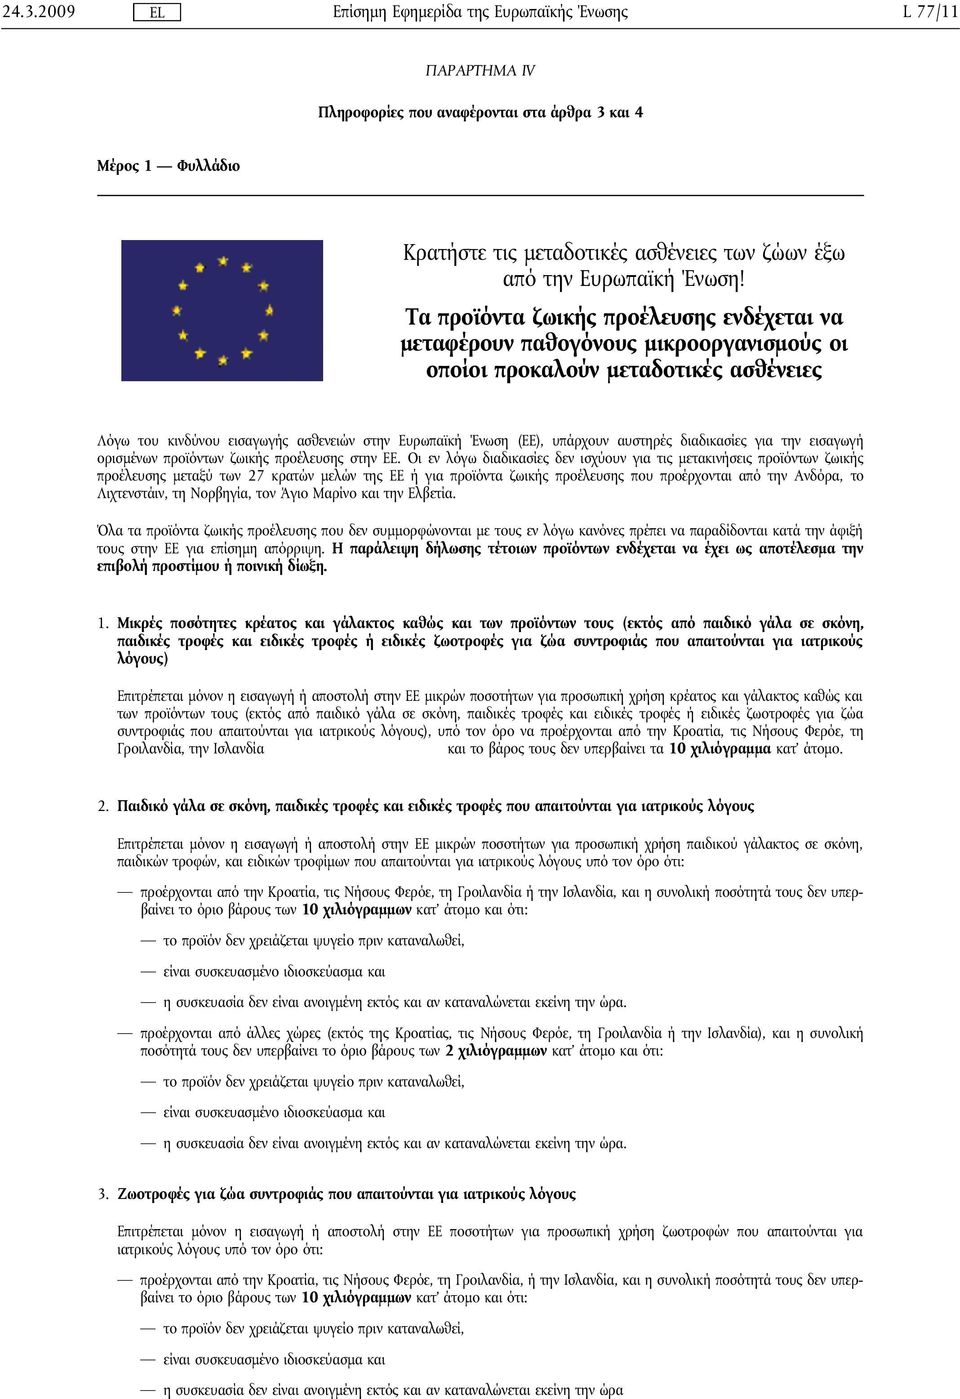 αυστηρές διαδικασίες για την εισαγωγή ορισμένων προϊόντων ζωικής προέλευσης στην ΕΕ.